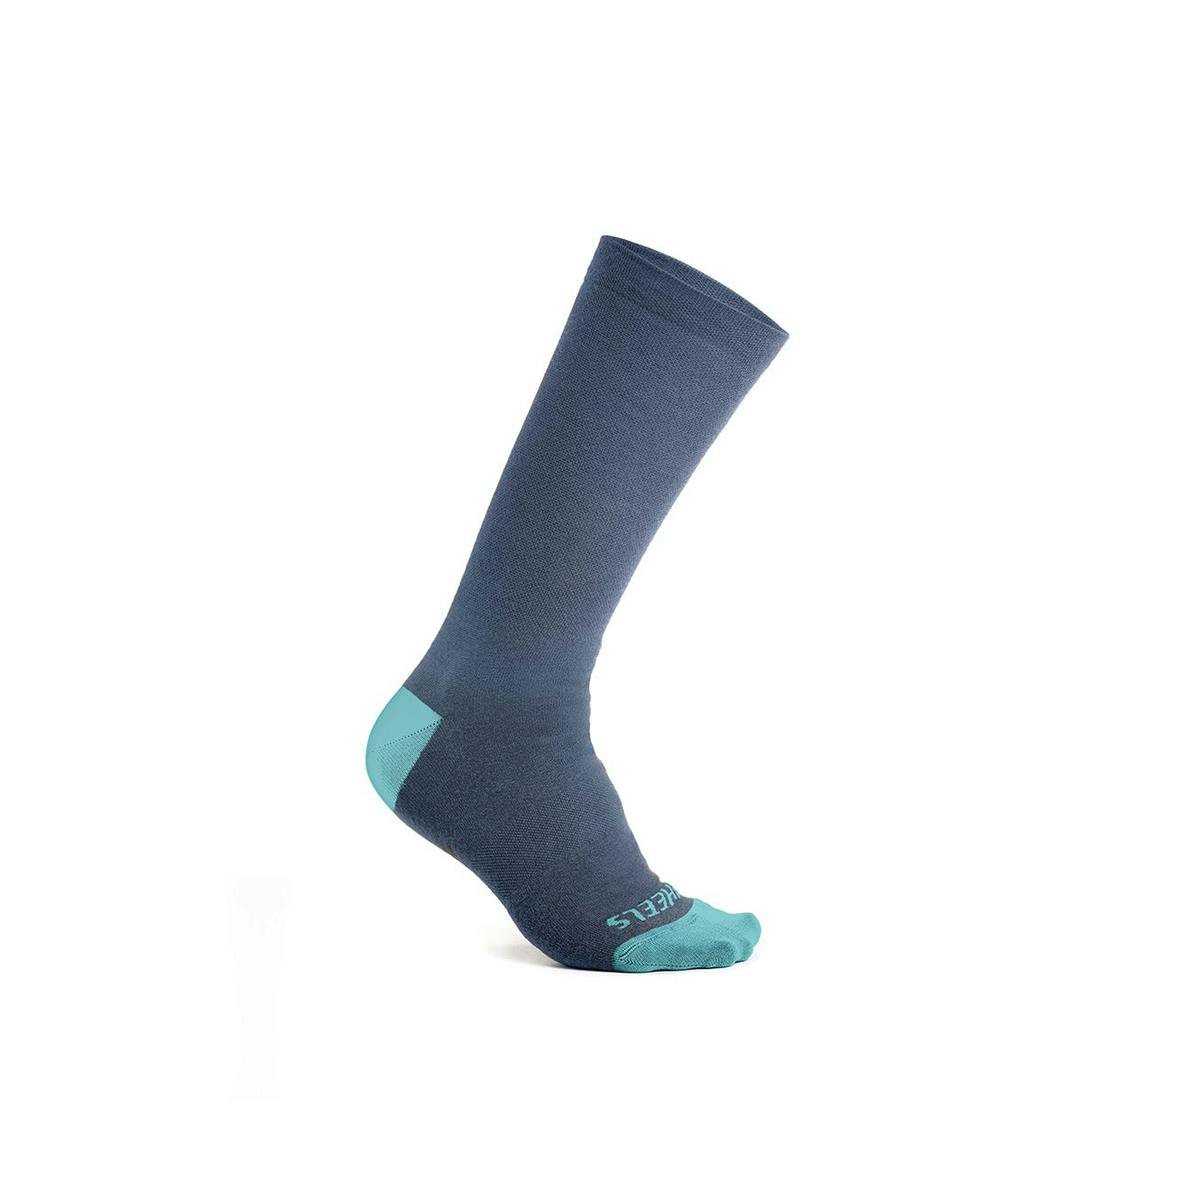 7Mesh Ashlu Merino 7in Socks - Cadet Blue - Medium